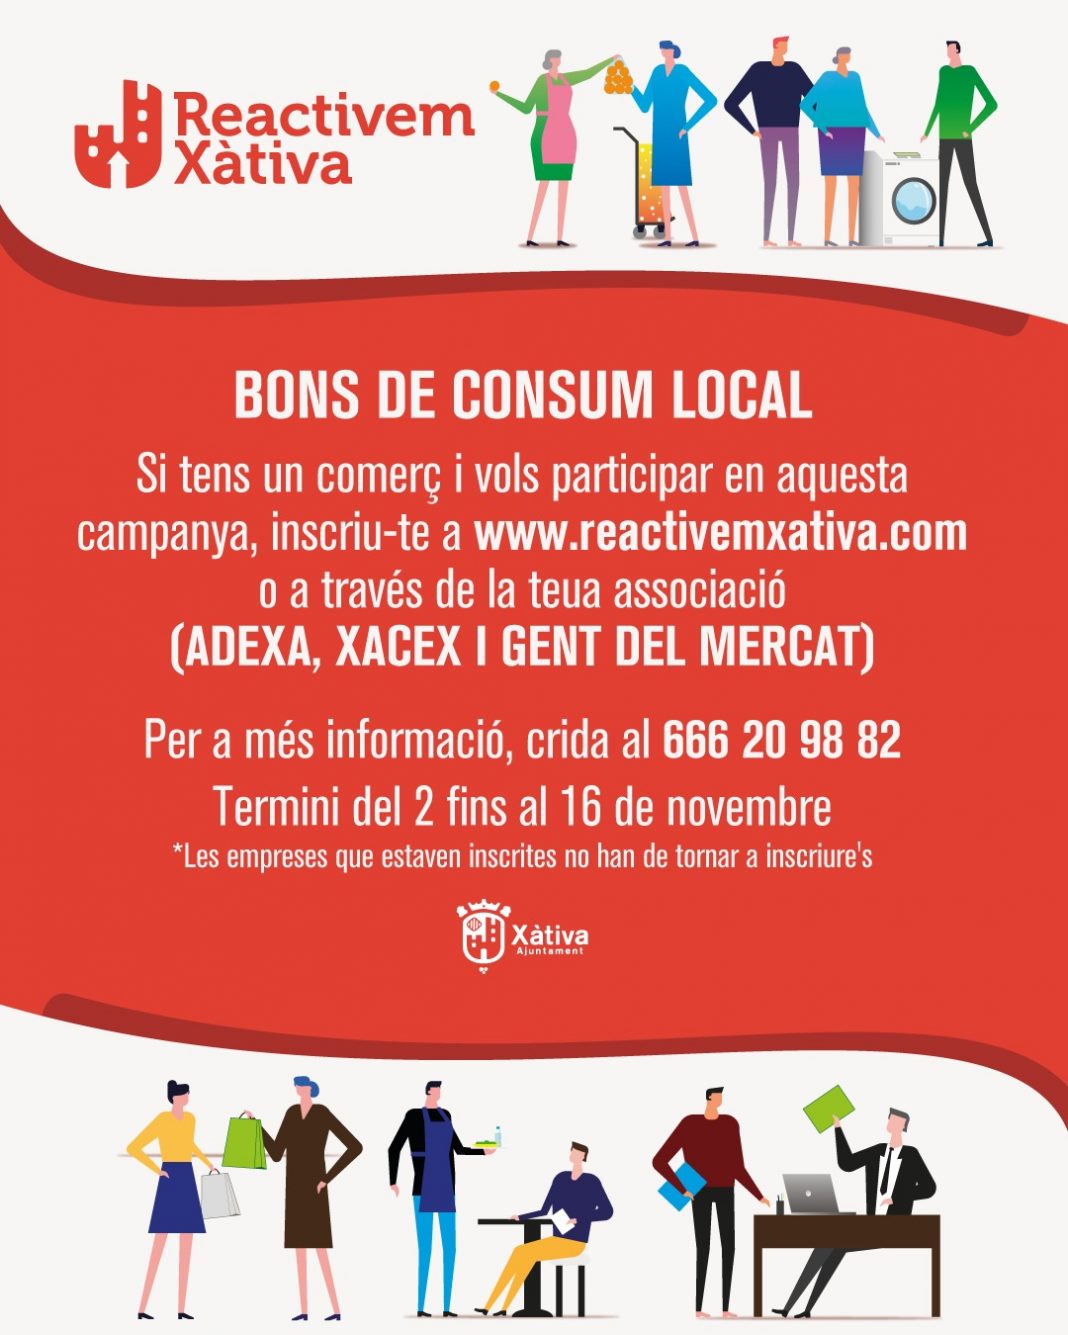 El Ayuntamiento de Xàtiva mantiene abierto el plazo para inscribirse en la segunda fase de los bonos locales al consumo